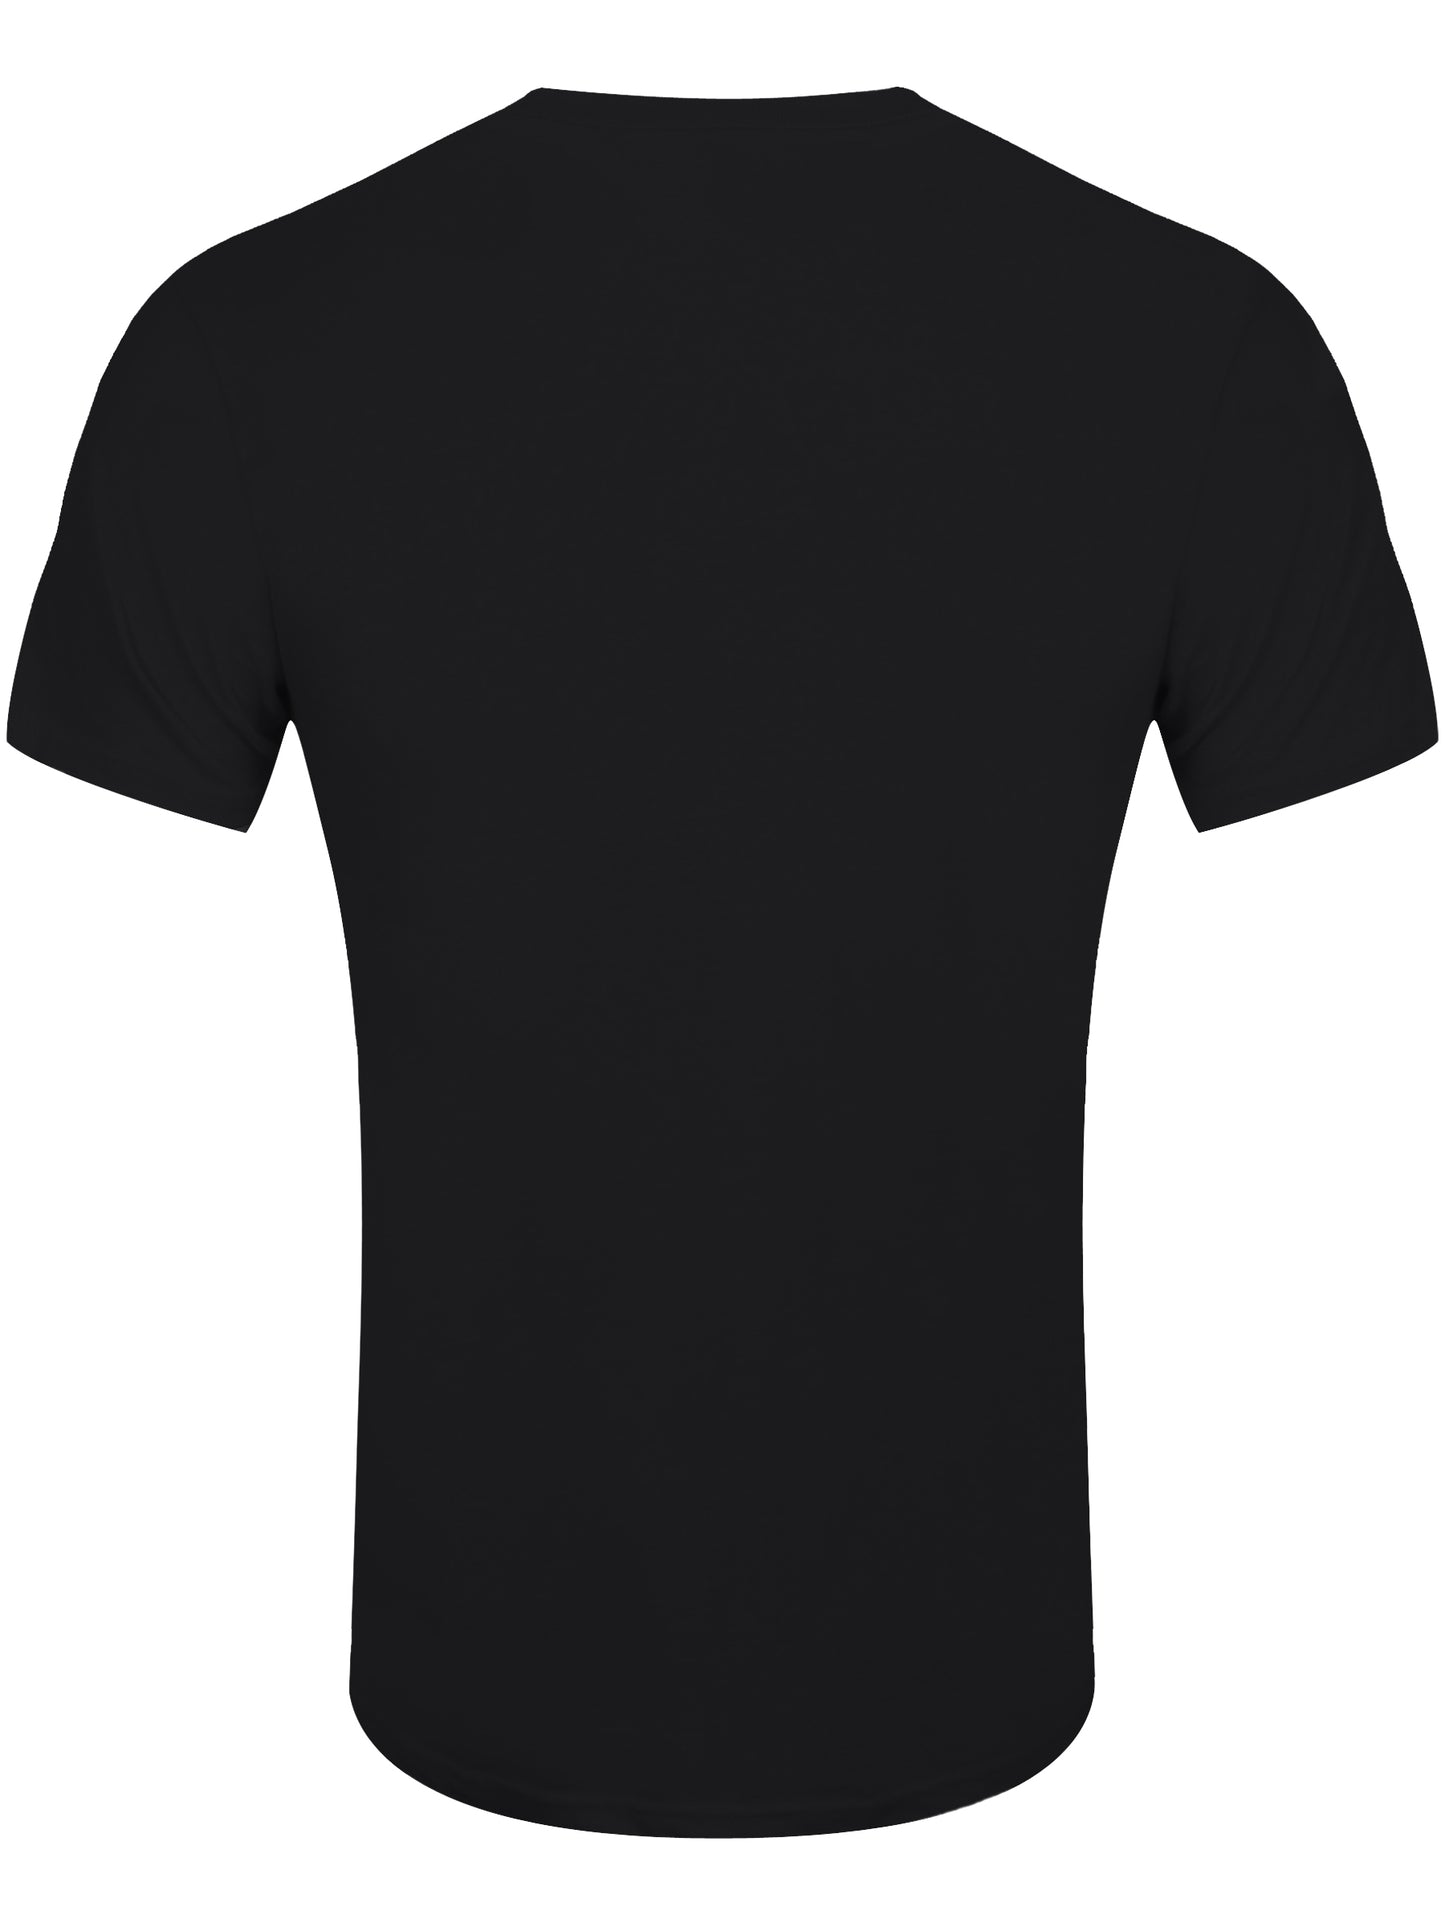 Iron Maiden Eddie Logo Album Art Men's Black T-Shirt